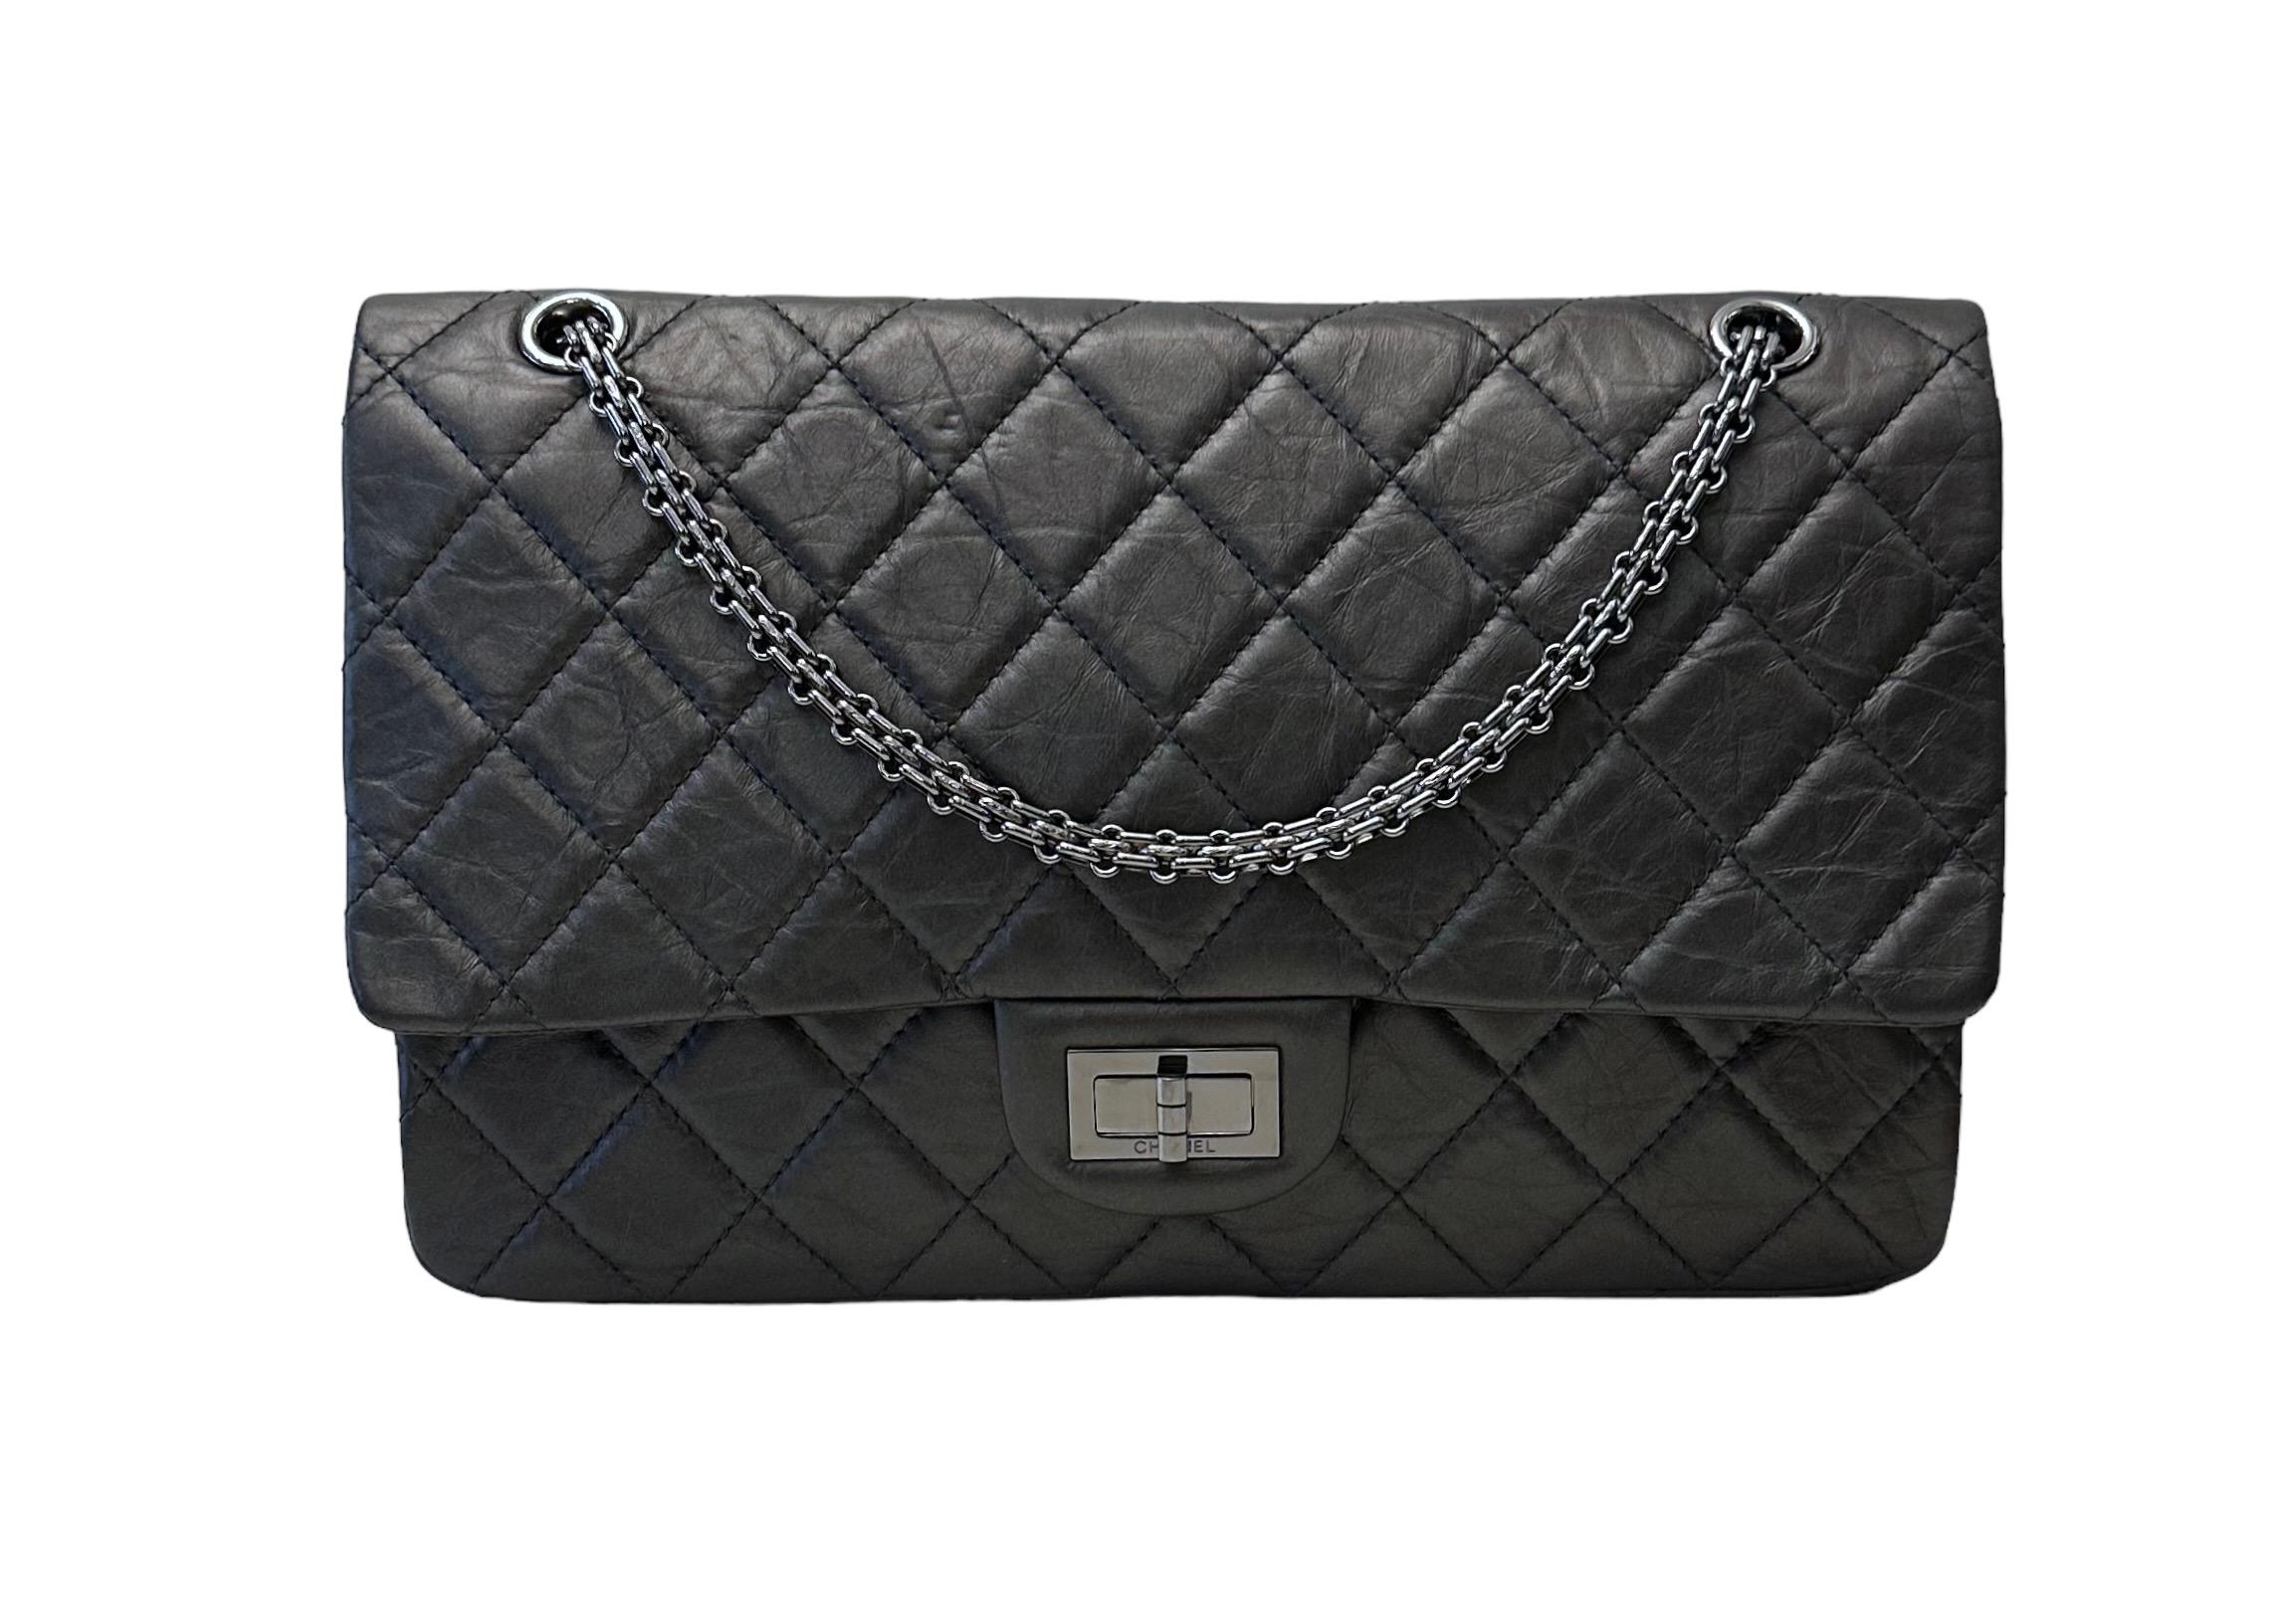 Ce magnifique sac d'occasion Chanel 2.55 Classic Doubleflap Maxi Bag - 5 pockets est le sac à main le plus emblématique du monde de la mode. Il est réalisé dans un superbe cuir de veau matelassé gris foncé vieilli. 
Il est doté d'une fermeture